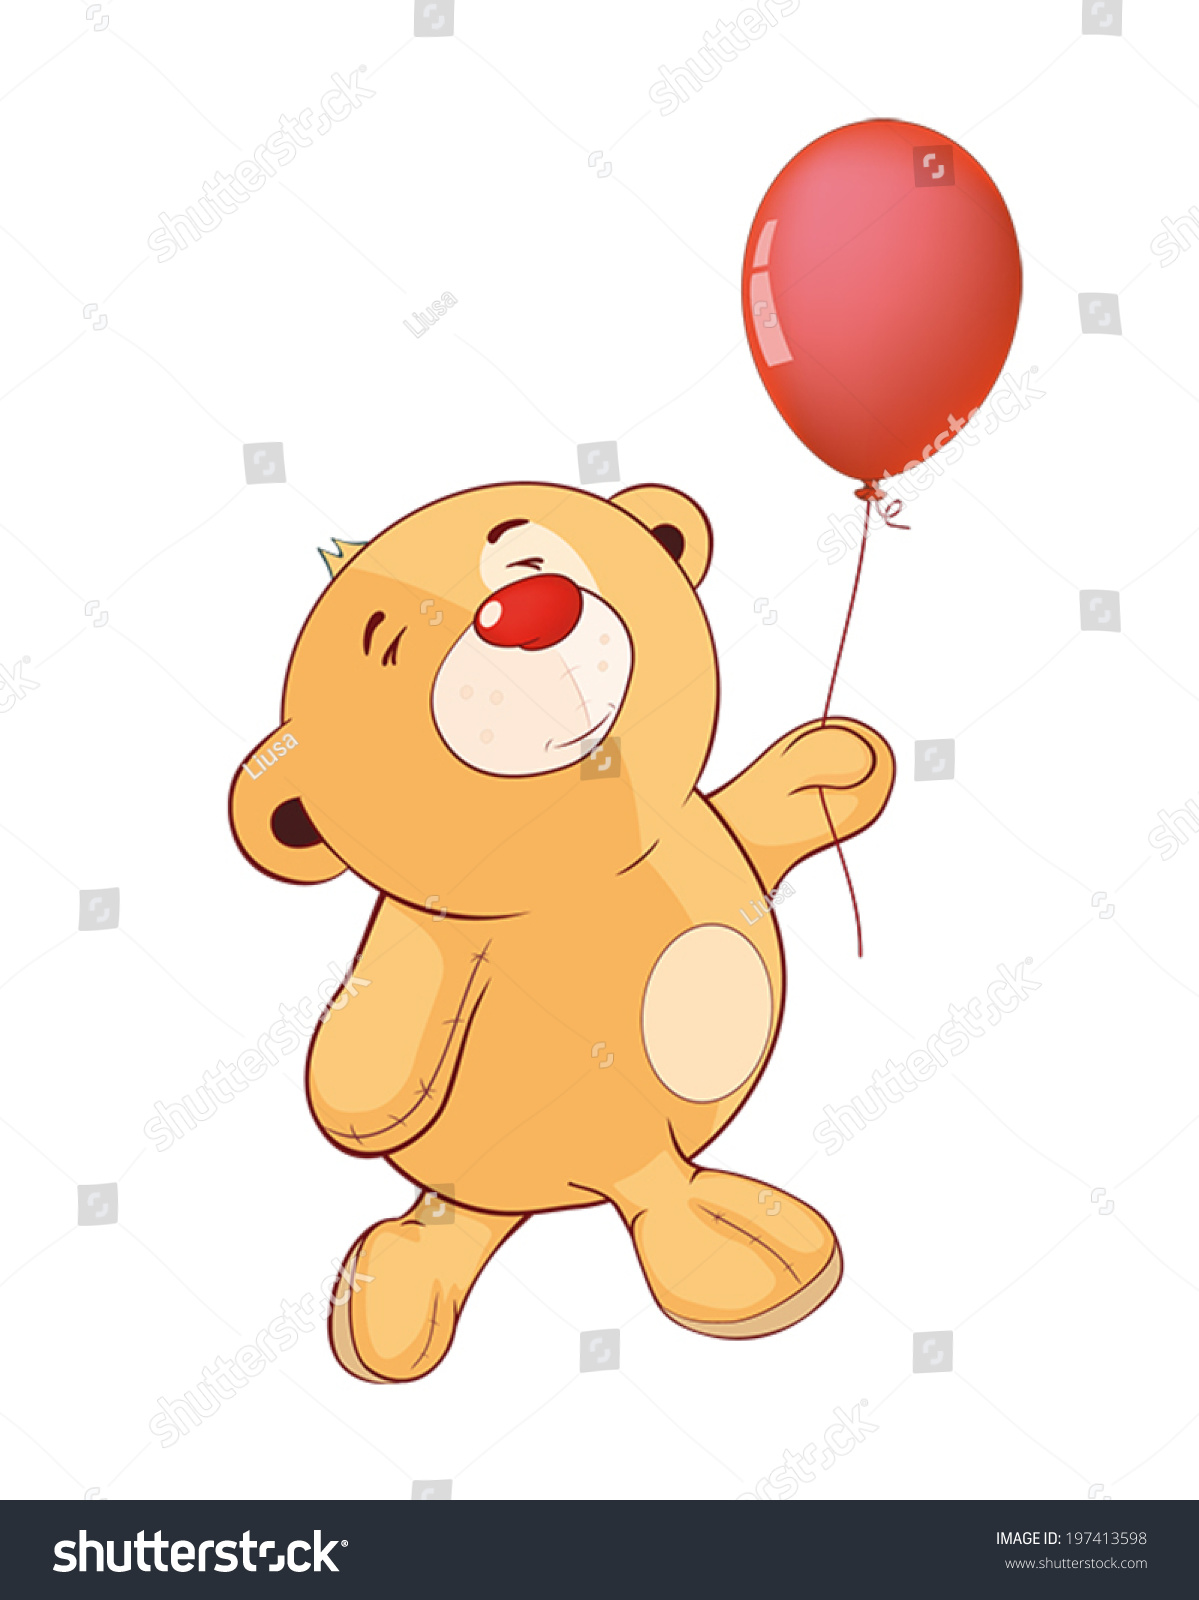 stuffed animal in a balloon